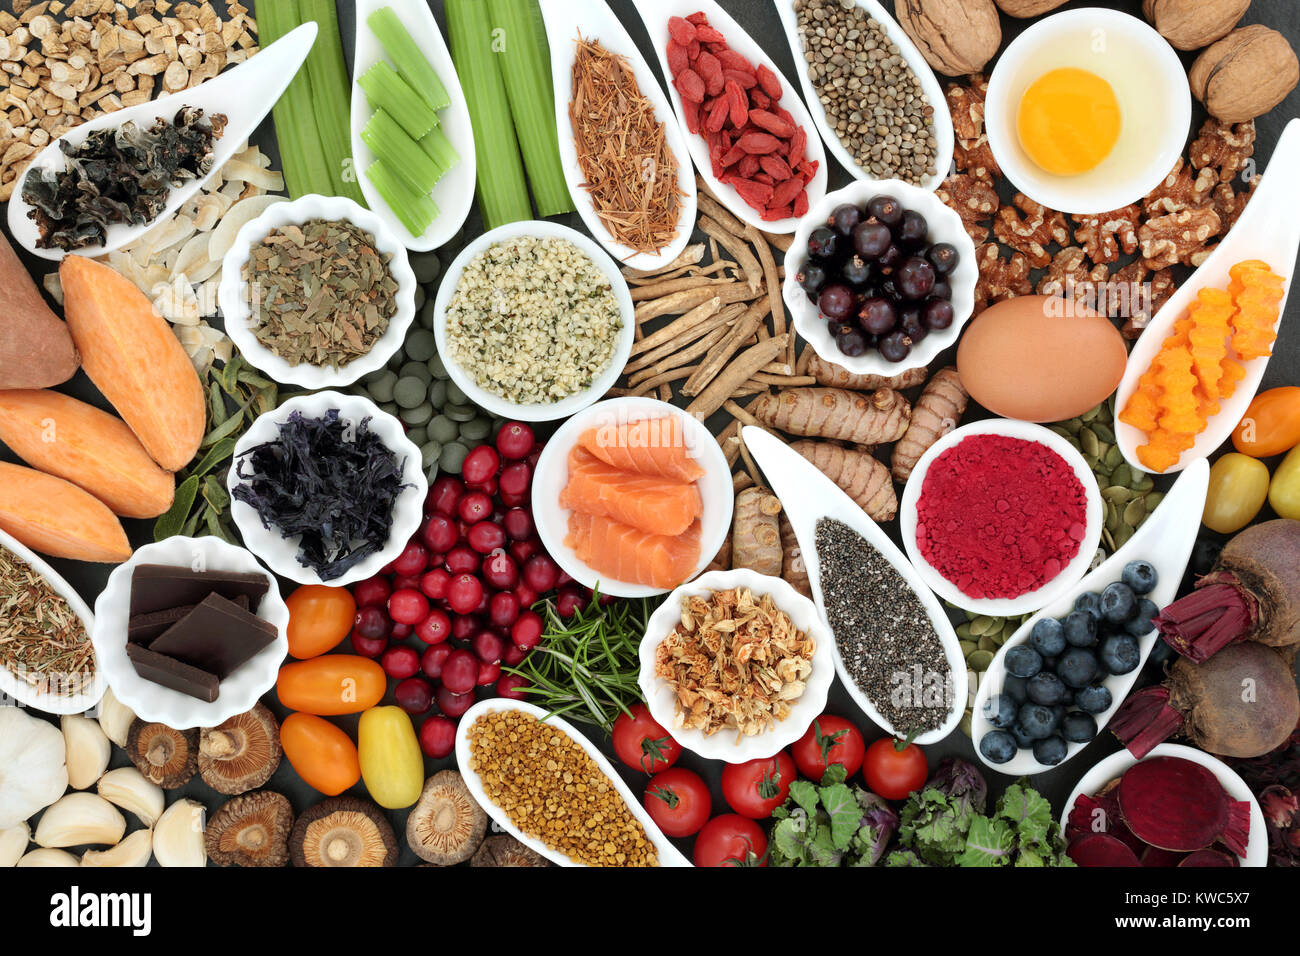 Della salute alimentare per migliorare il cervello funzioni cognitive. Super Foods concetto molto elevata di minerali, vitamine antiossidanti, omega 3 e di antocianine. Foto Stock